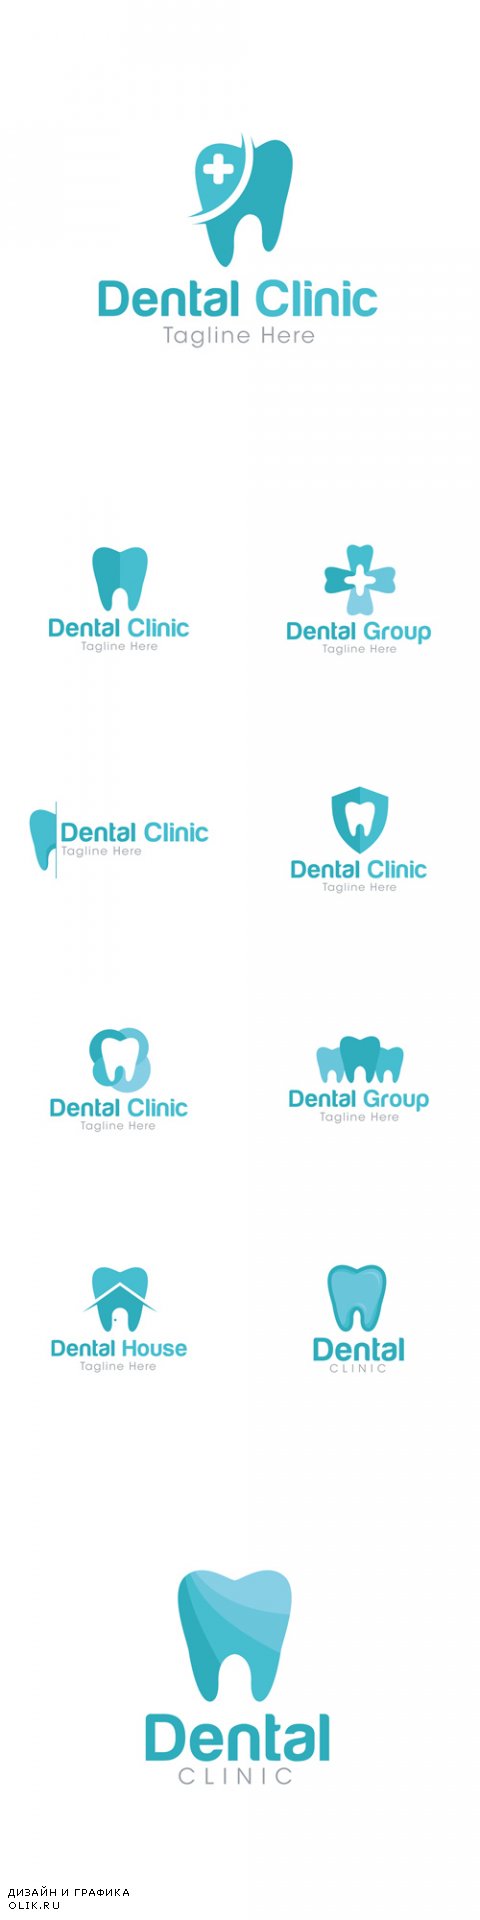 Vector Dental Clinic Logo Creative Design